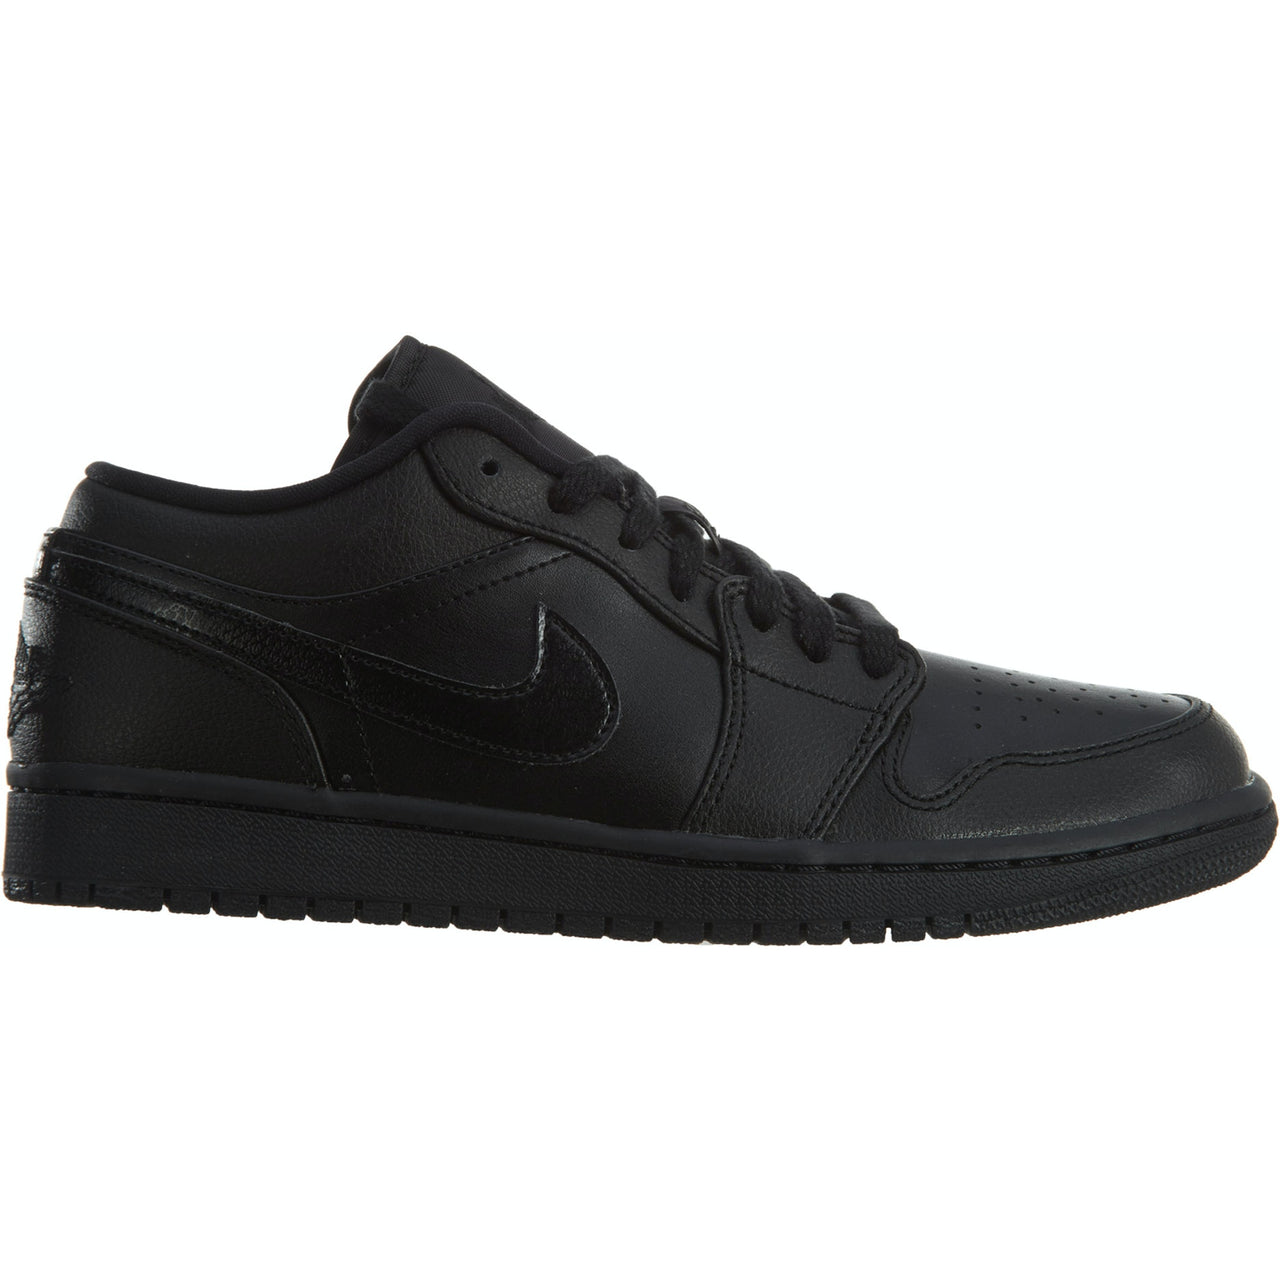 Nike Air Jordan 1 Low "Black Noir"